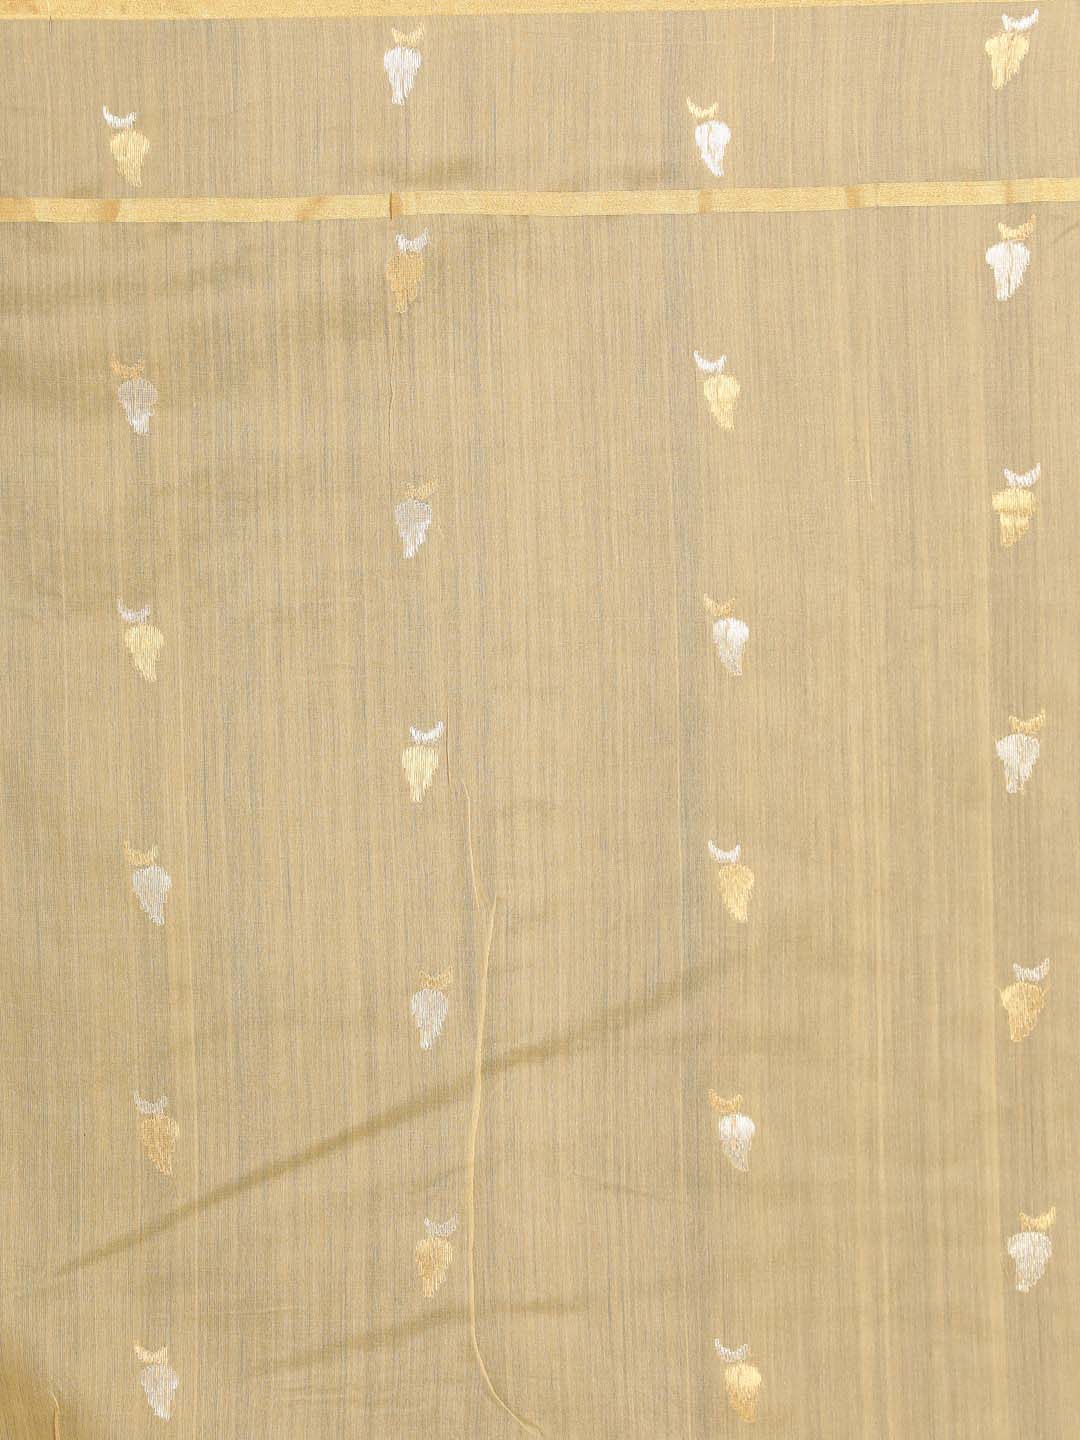 Indethnic Chanderi Handloom Silk Cotton Saree - Saree Detail View